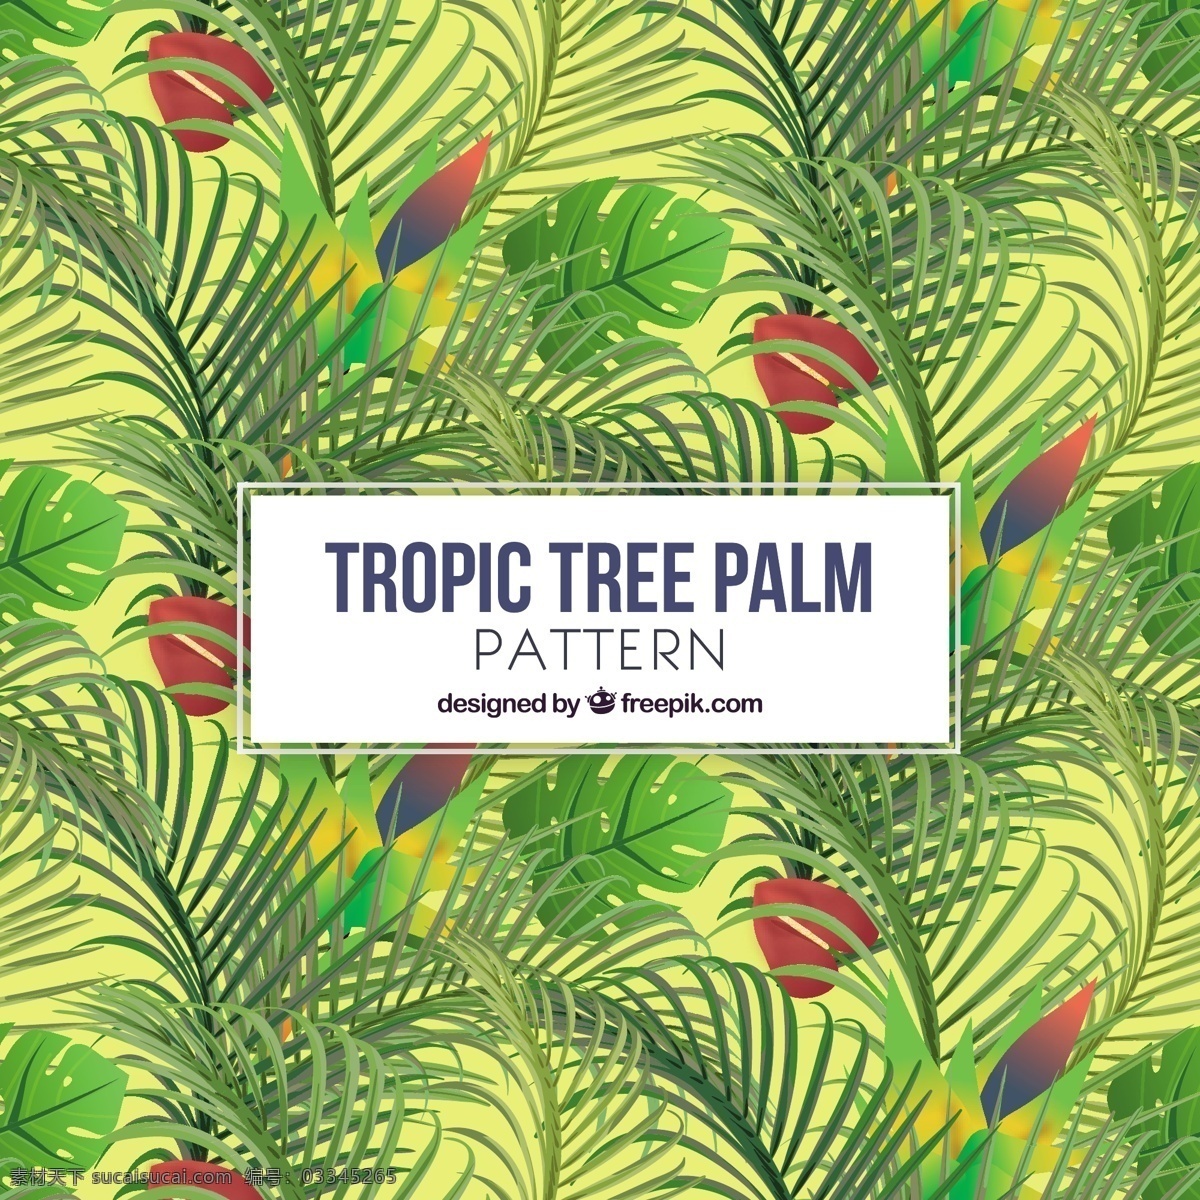 棕榈树 欢乐 背景 树木 树叶 夏天 自然 热带 植物 环境 自然背景 palm 棕榈叶 天堂 树干 异国情调